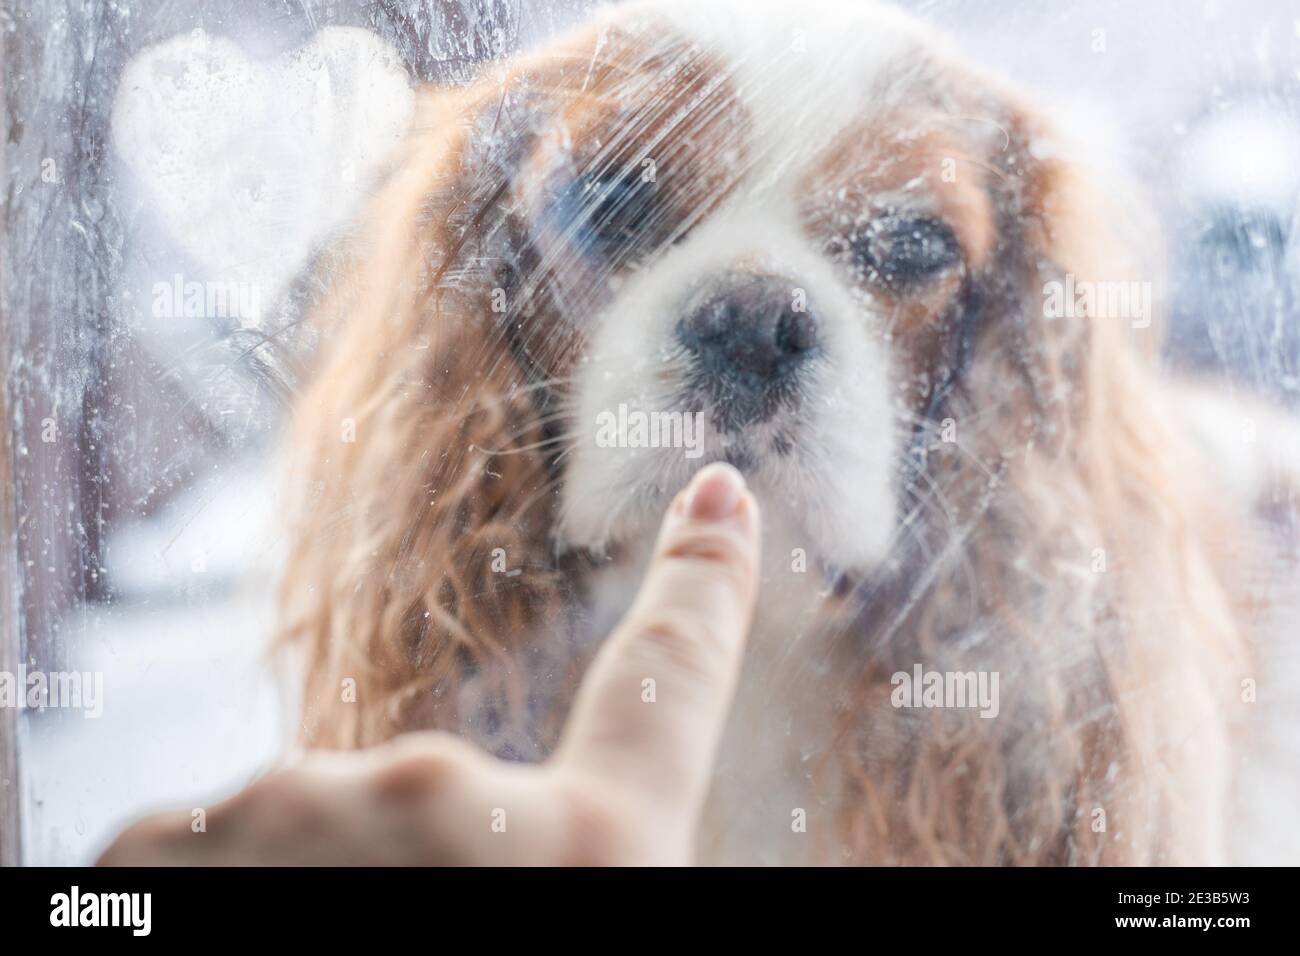 Unschärfe-Effekte wie im Kino durch schmutziges, unscharfes Glas. Finger berühren Gesicht von Cavalier King Charles Spaniel Hund durch gefrorenes Glas der Tür. Stockfoto